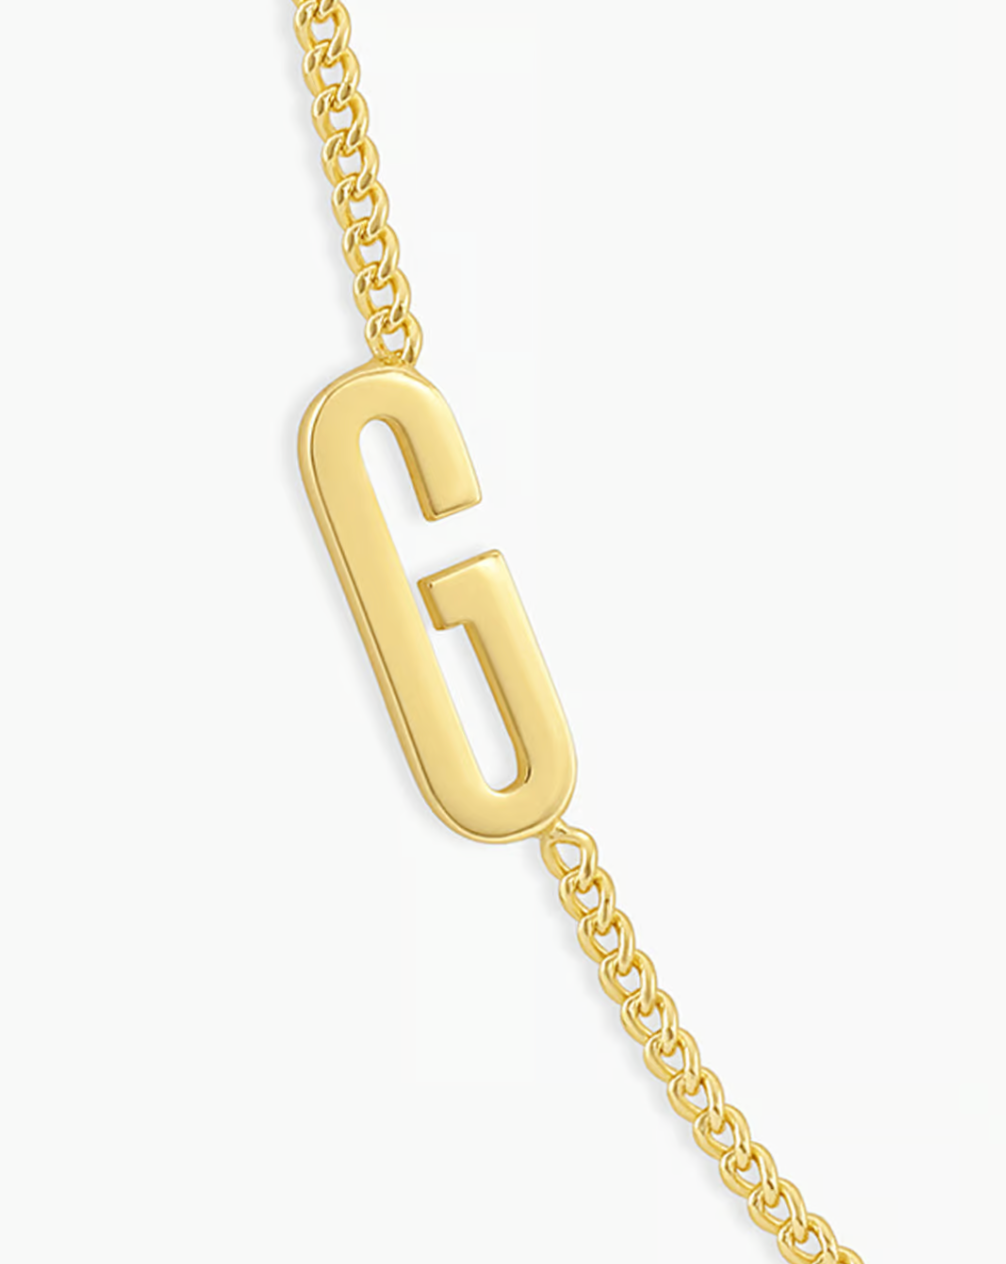 Wilder alphabet necklace - G